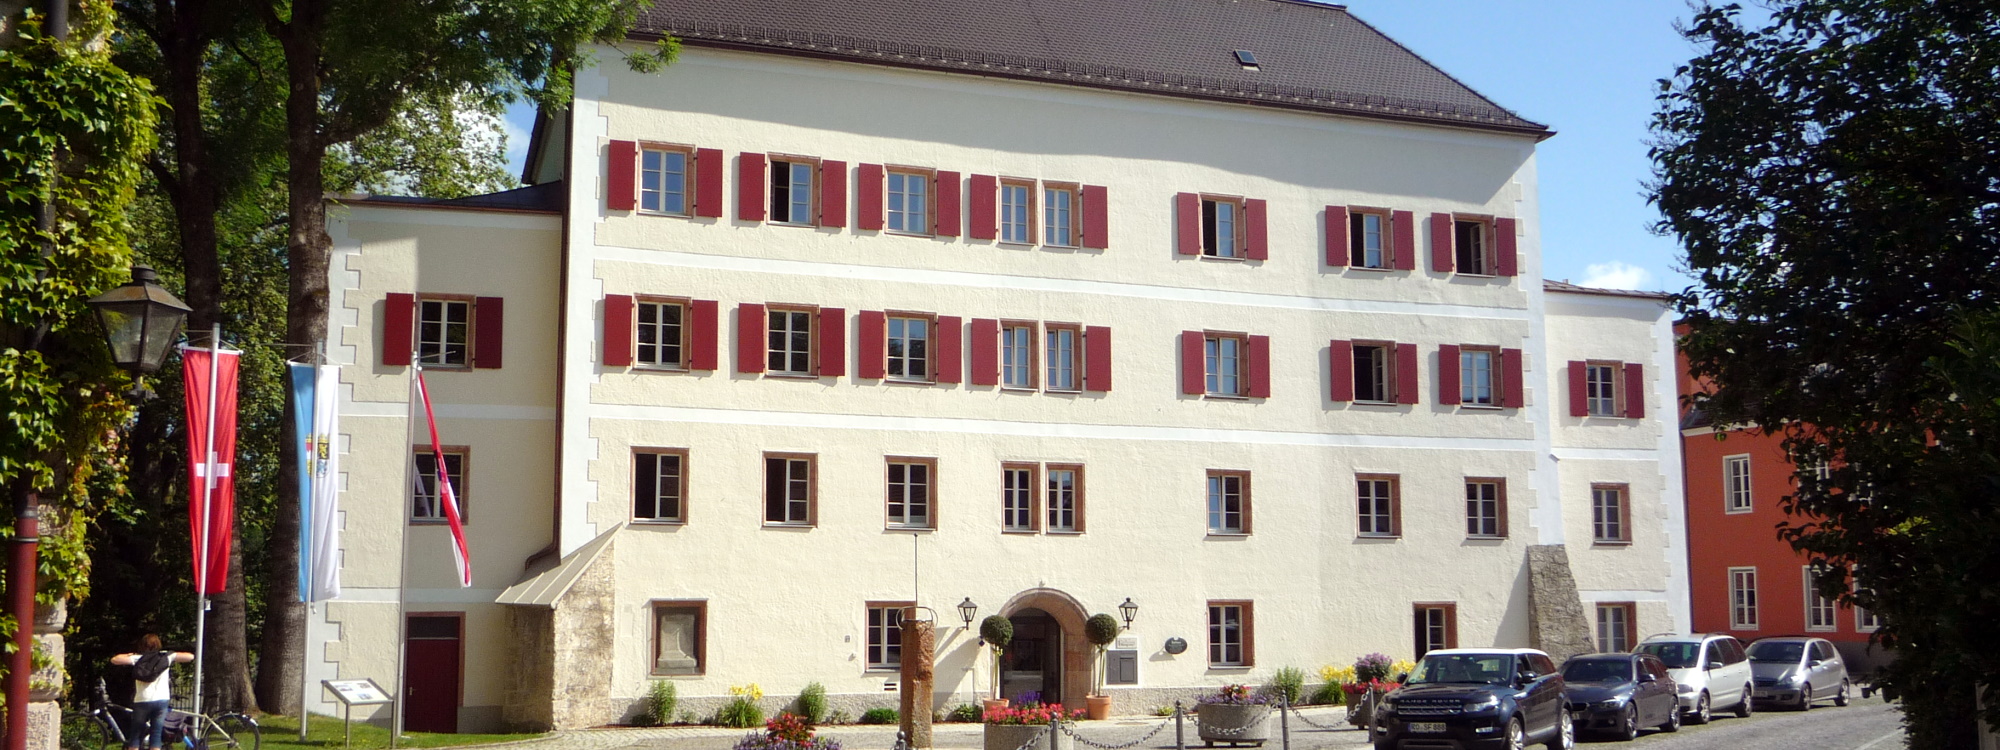 Neues Rathaus der Stadt Laufen - ehemaliges Landratsamt des Landkreises Laufen